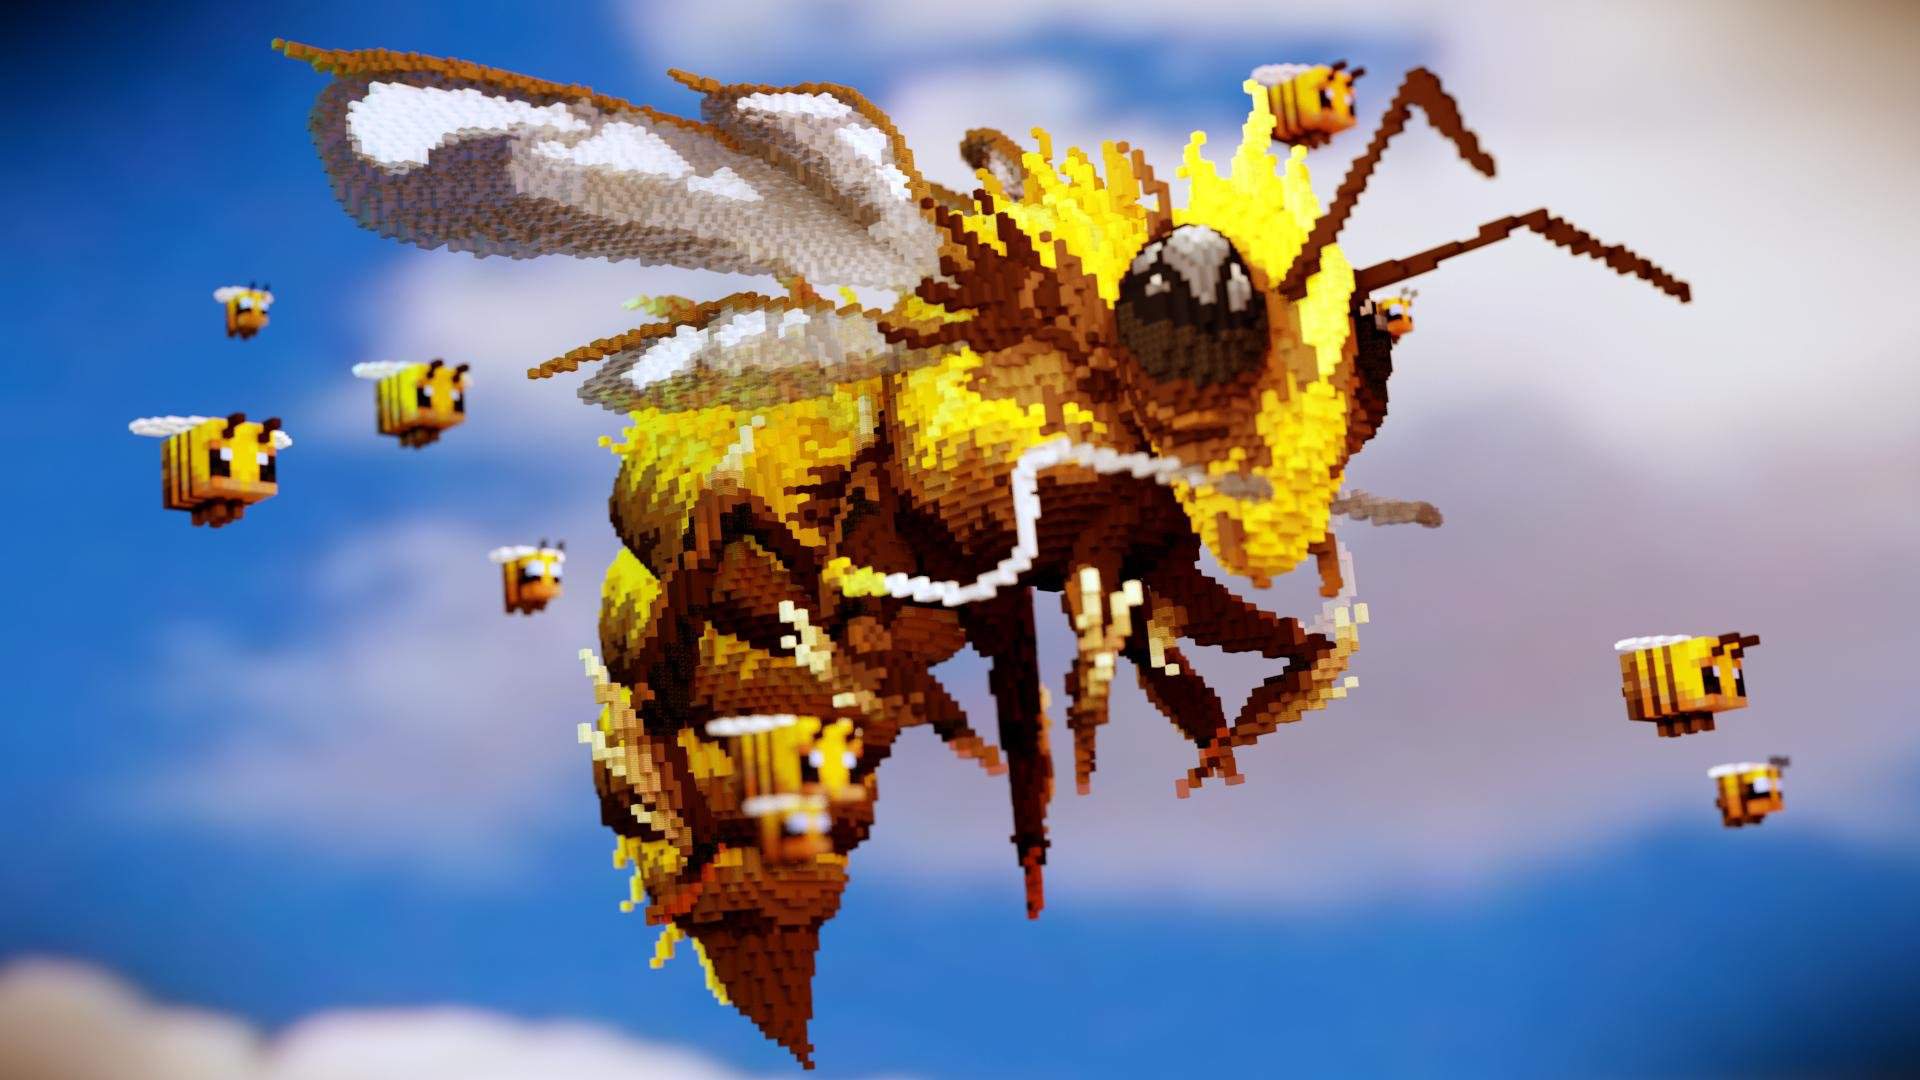 пчелиная королева terraria фото 50